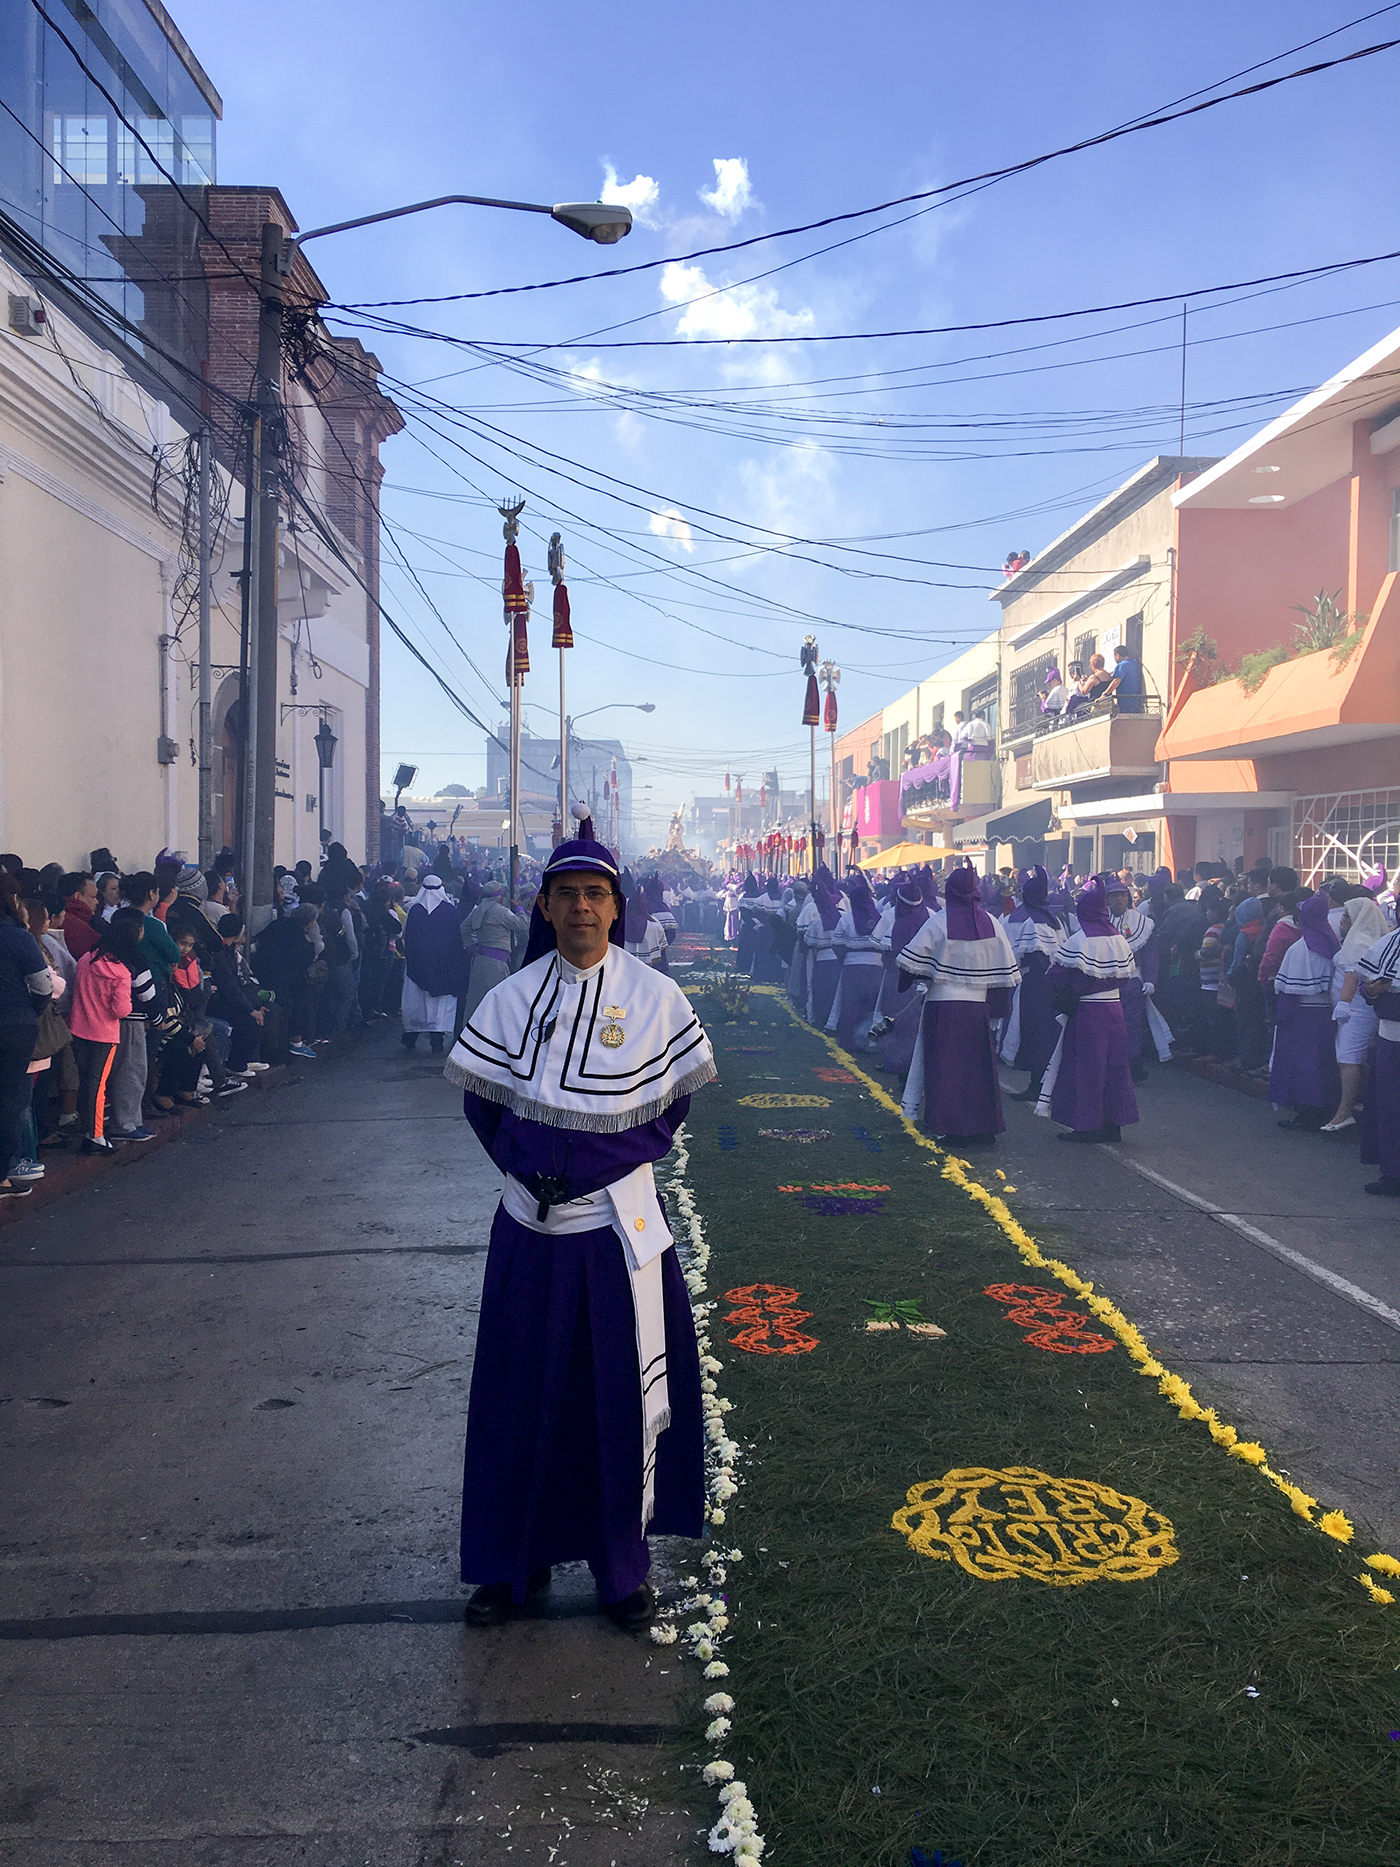 Centenario consagracion cristo rey #candelariacristo rey Procesion Guatemala alfombras cucuruchos jesus candelaria